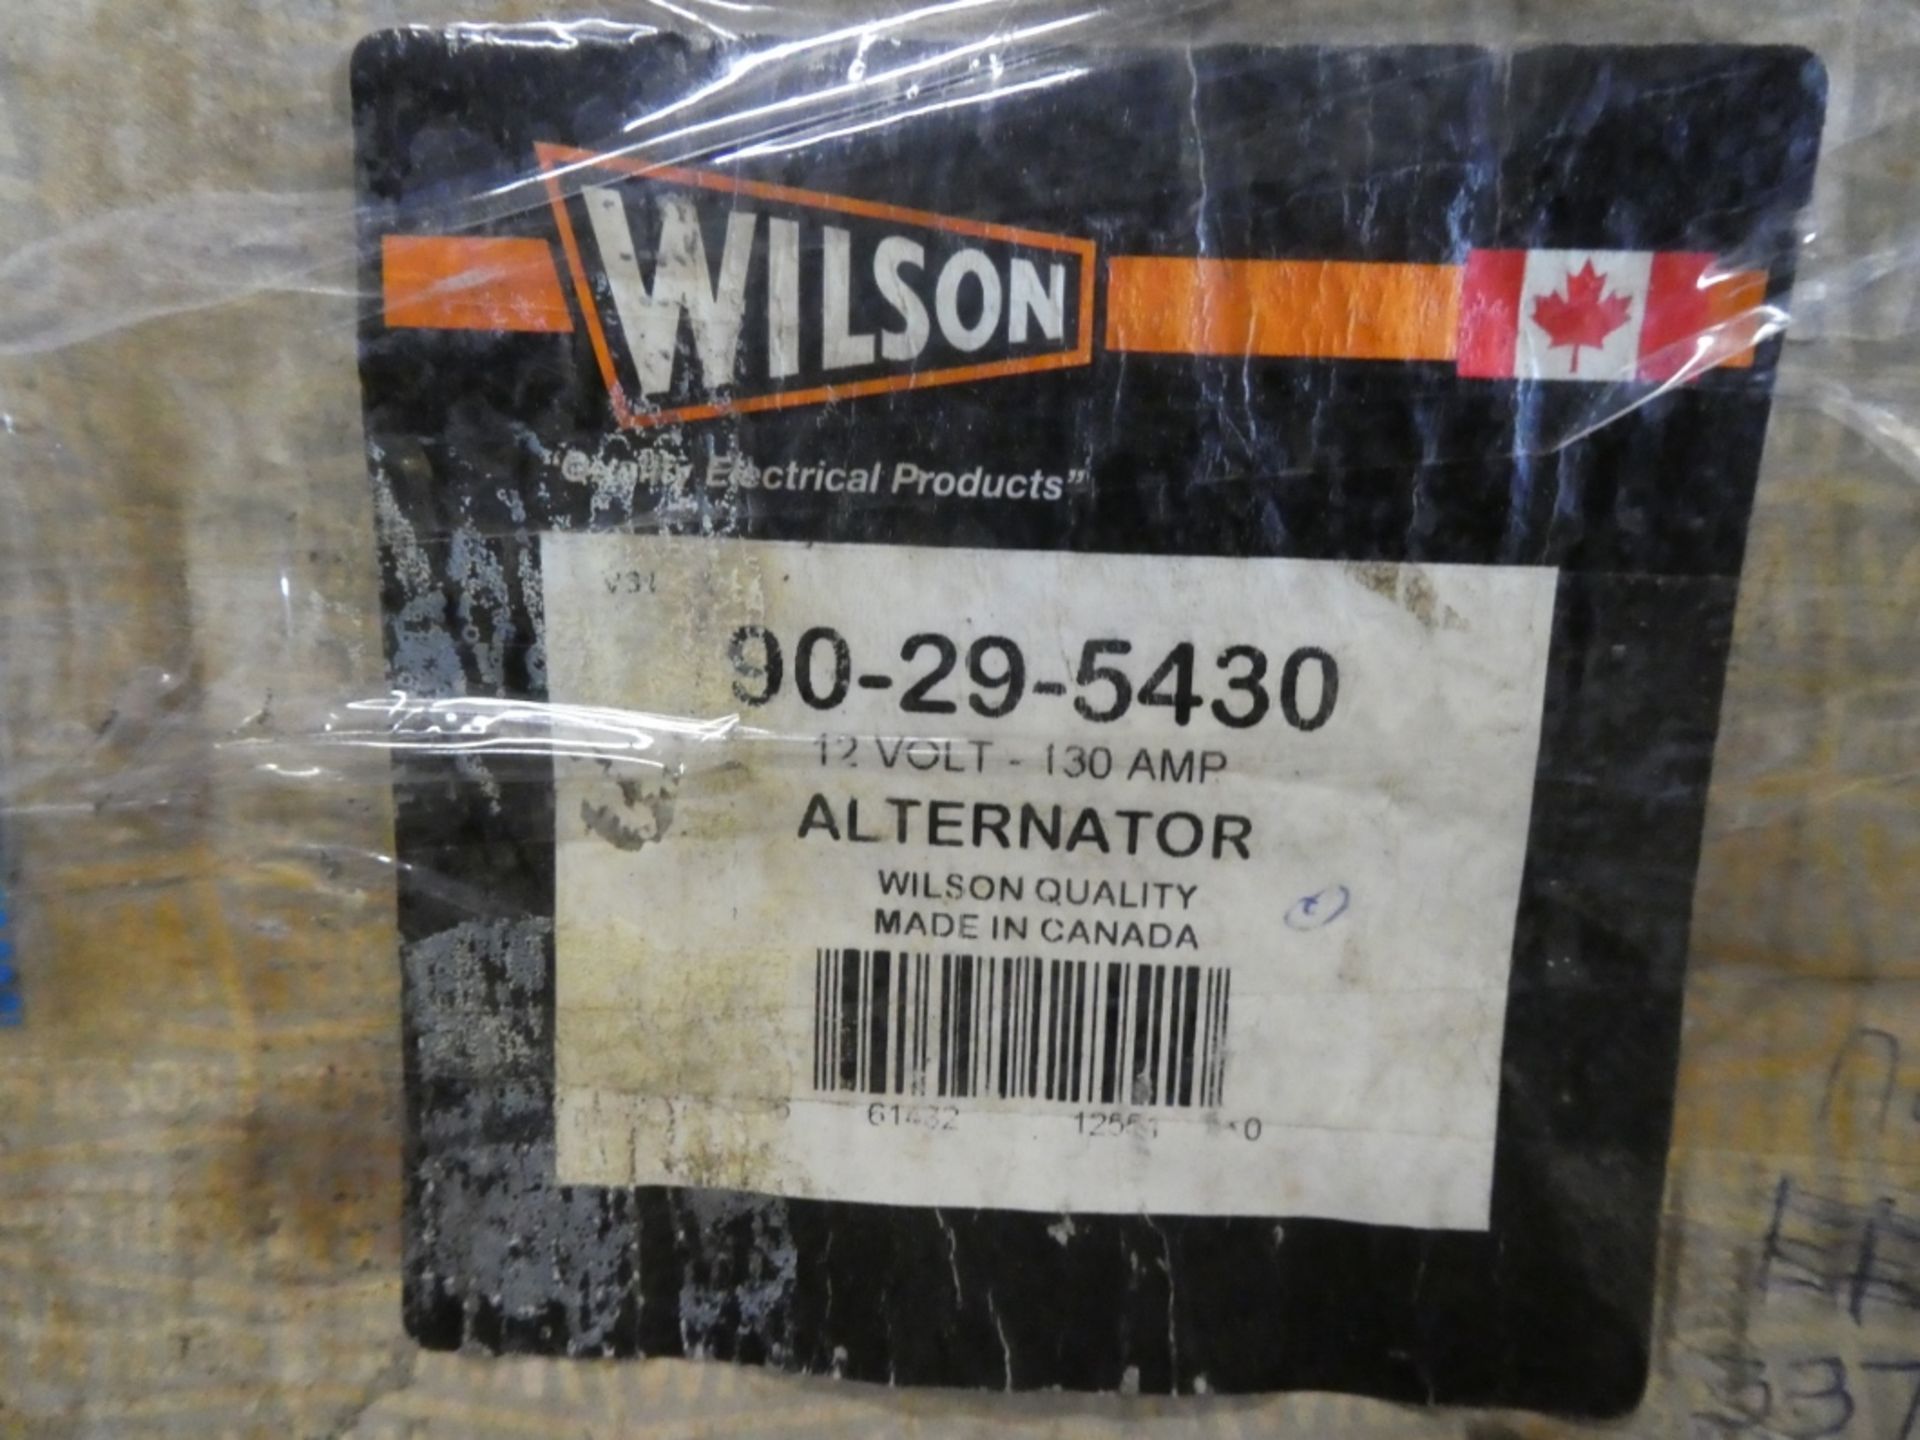 WILSON 12V 130 AMP ALTERNATOR, PART #90-29-5430 (NEW IN BOX) - Image 3 of 3